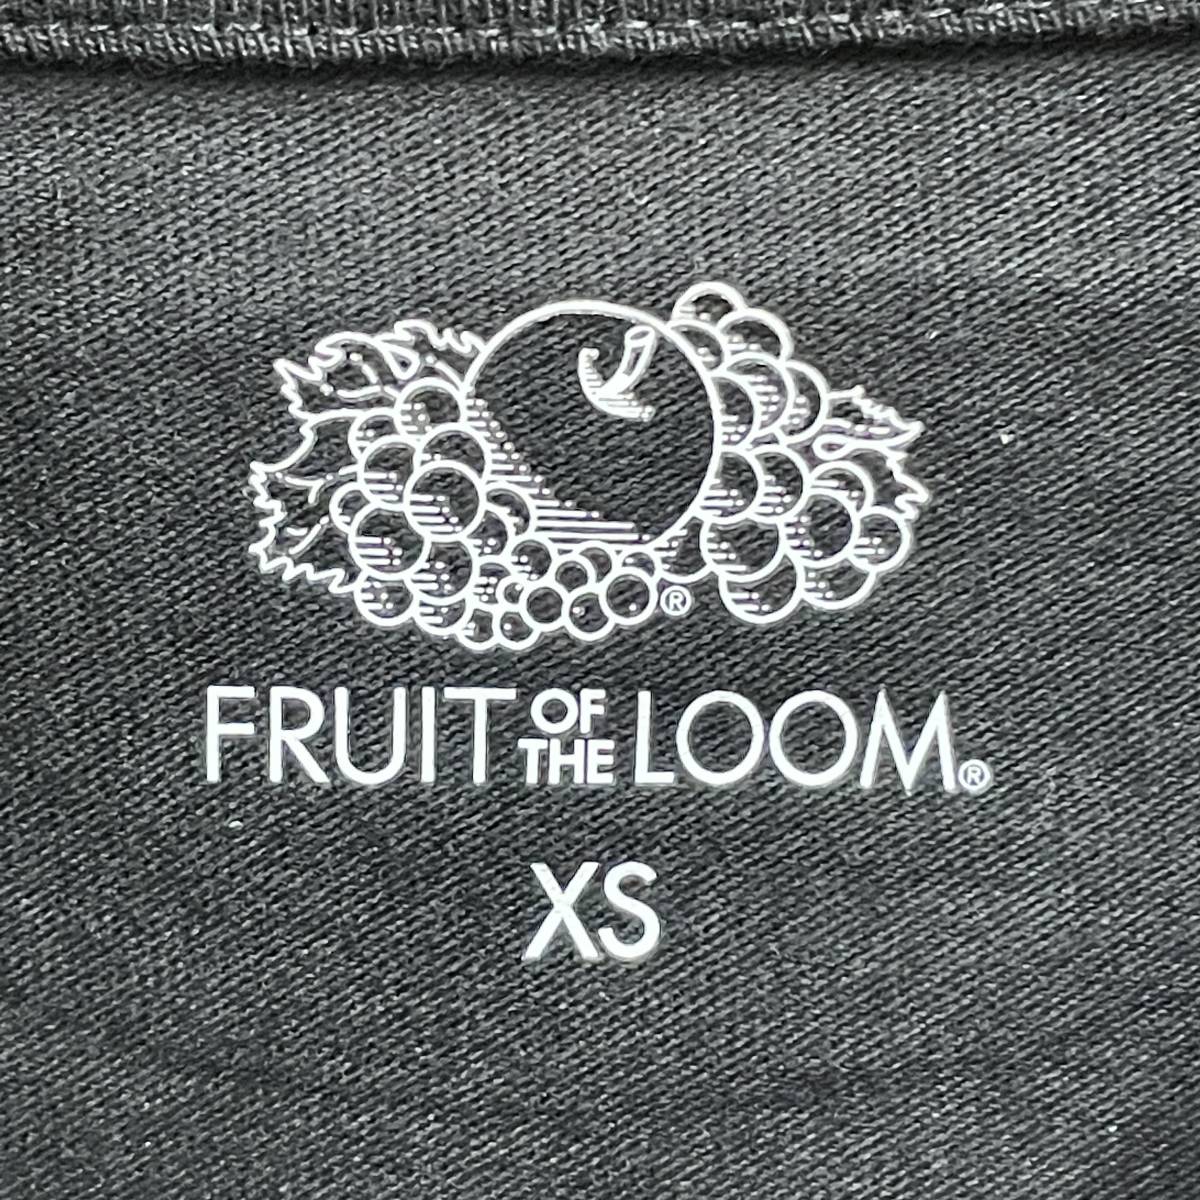 未使用 /XS/ FRUIT OF THE LOOM ブラックロンティ 長袖Tシャツ無地 メンズ レディース カジュアル トップス ポケット フルーツオブザルーム